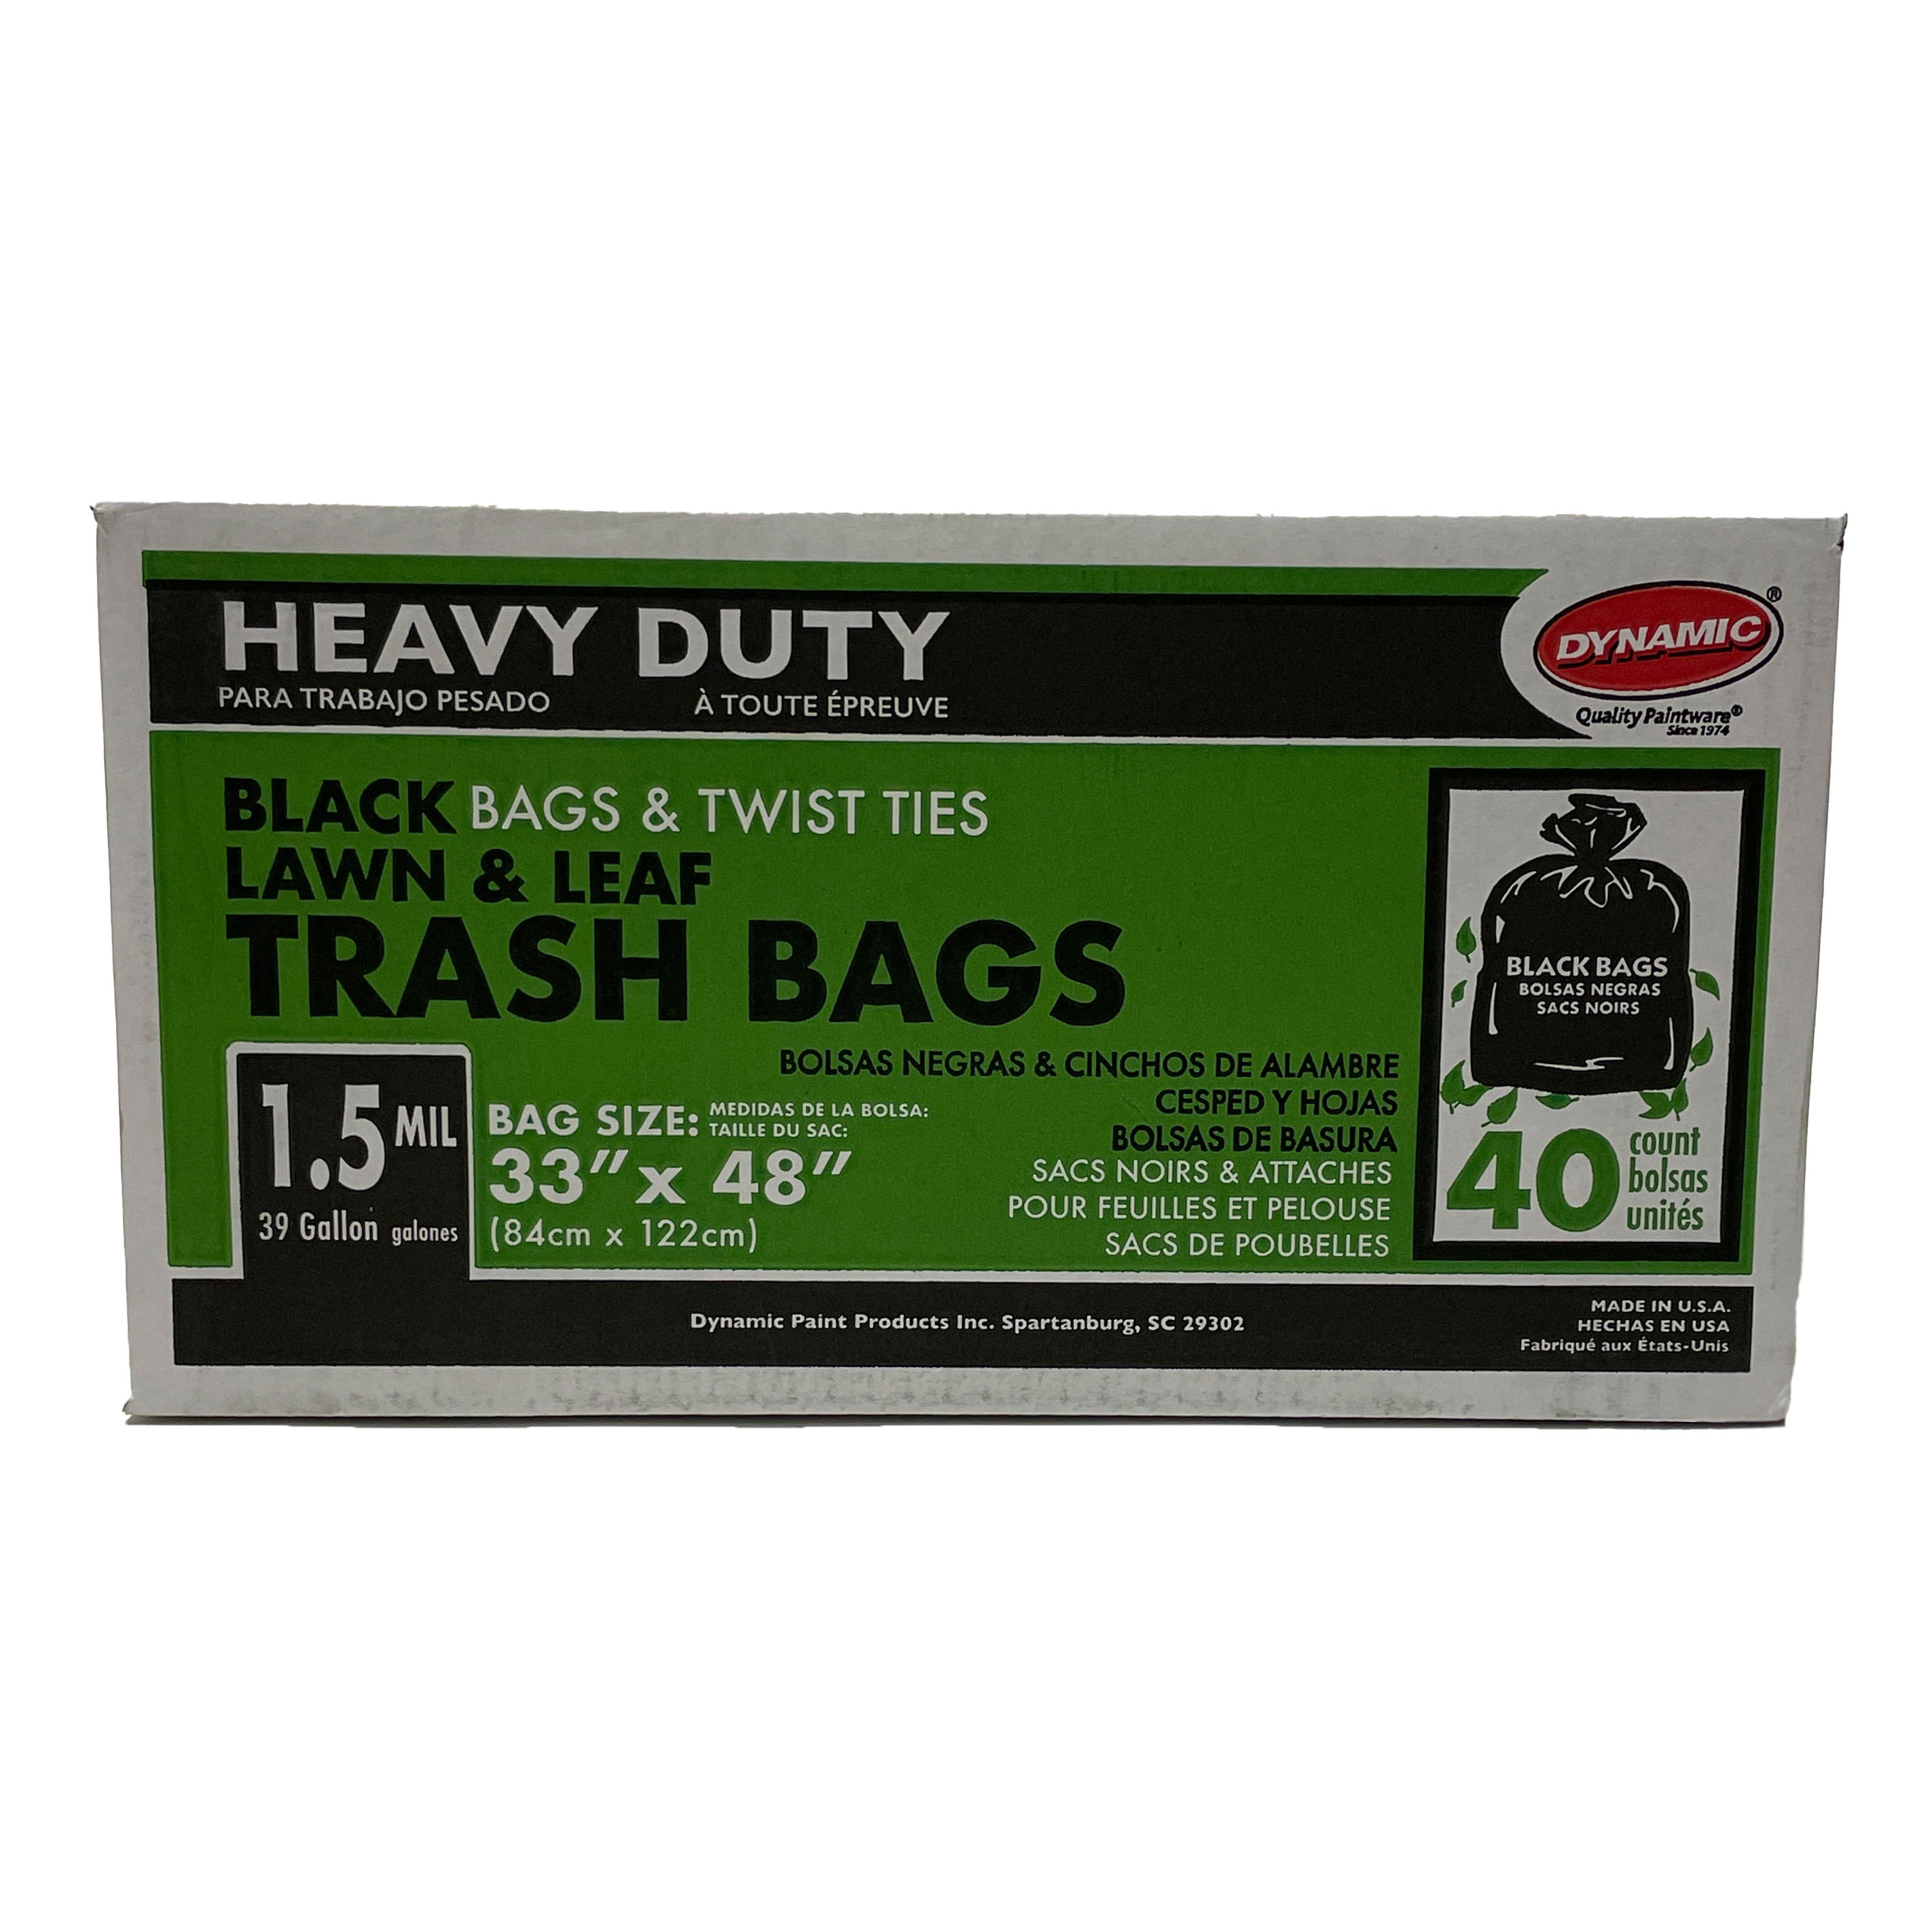 Dynamic 23305 Heavy Duty Black Lawn & Leaf Trash Bags, 1.5mil, 39 Gallon, 33" x 48", 40 Bags w/ Twist Ties